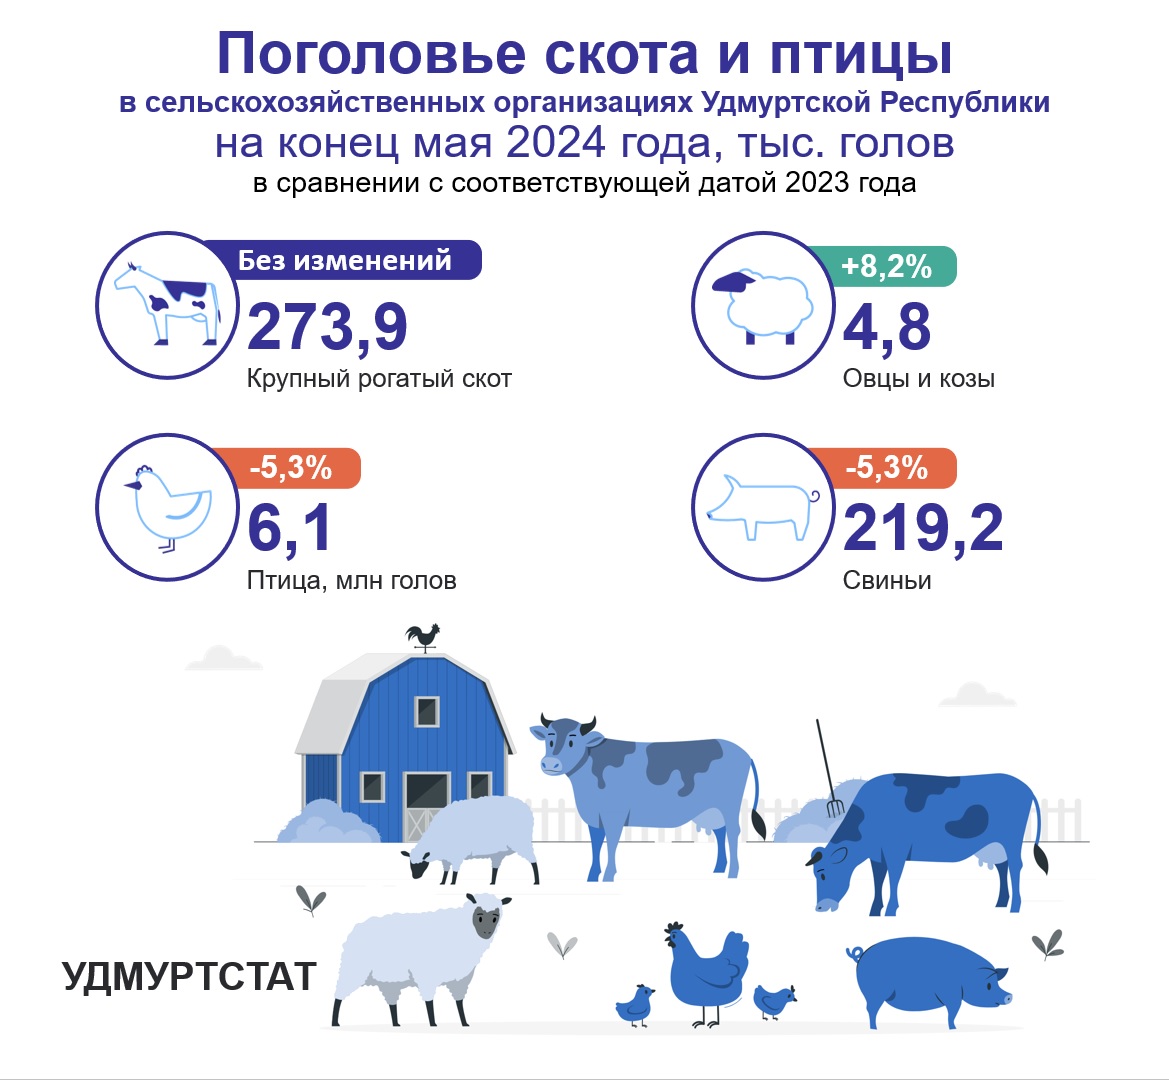 Поголовье скота и птицы на конец мая 2024 года.